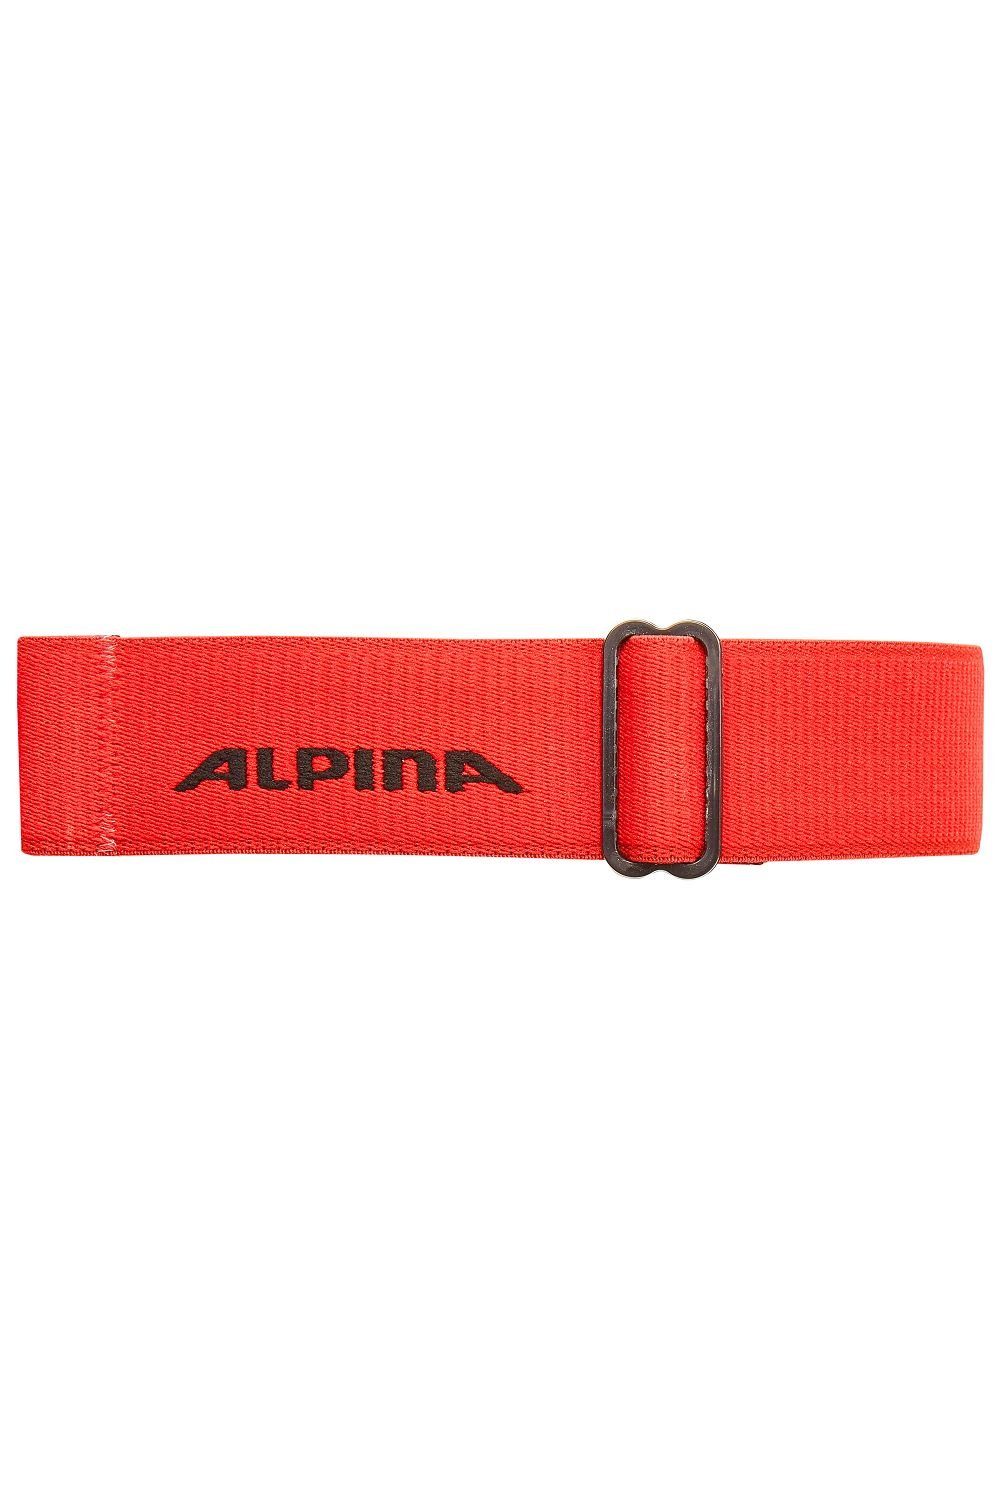 Skibrille Alpina Sports Alpina onesize DH schwarz/rot FREESPIRIT Skibrille